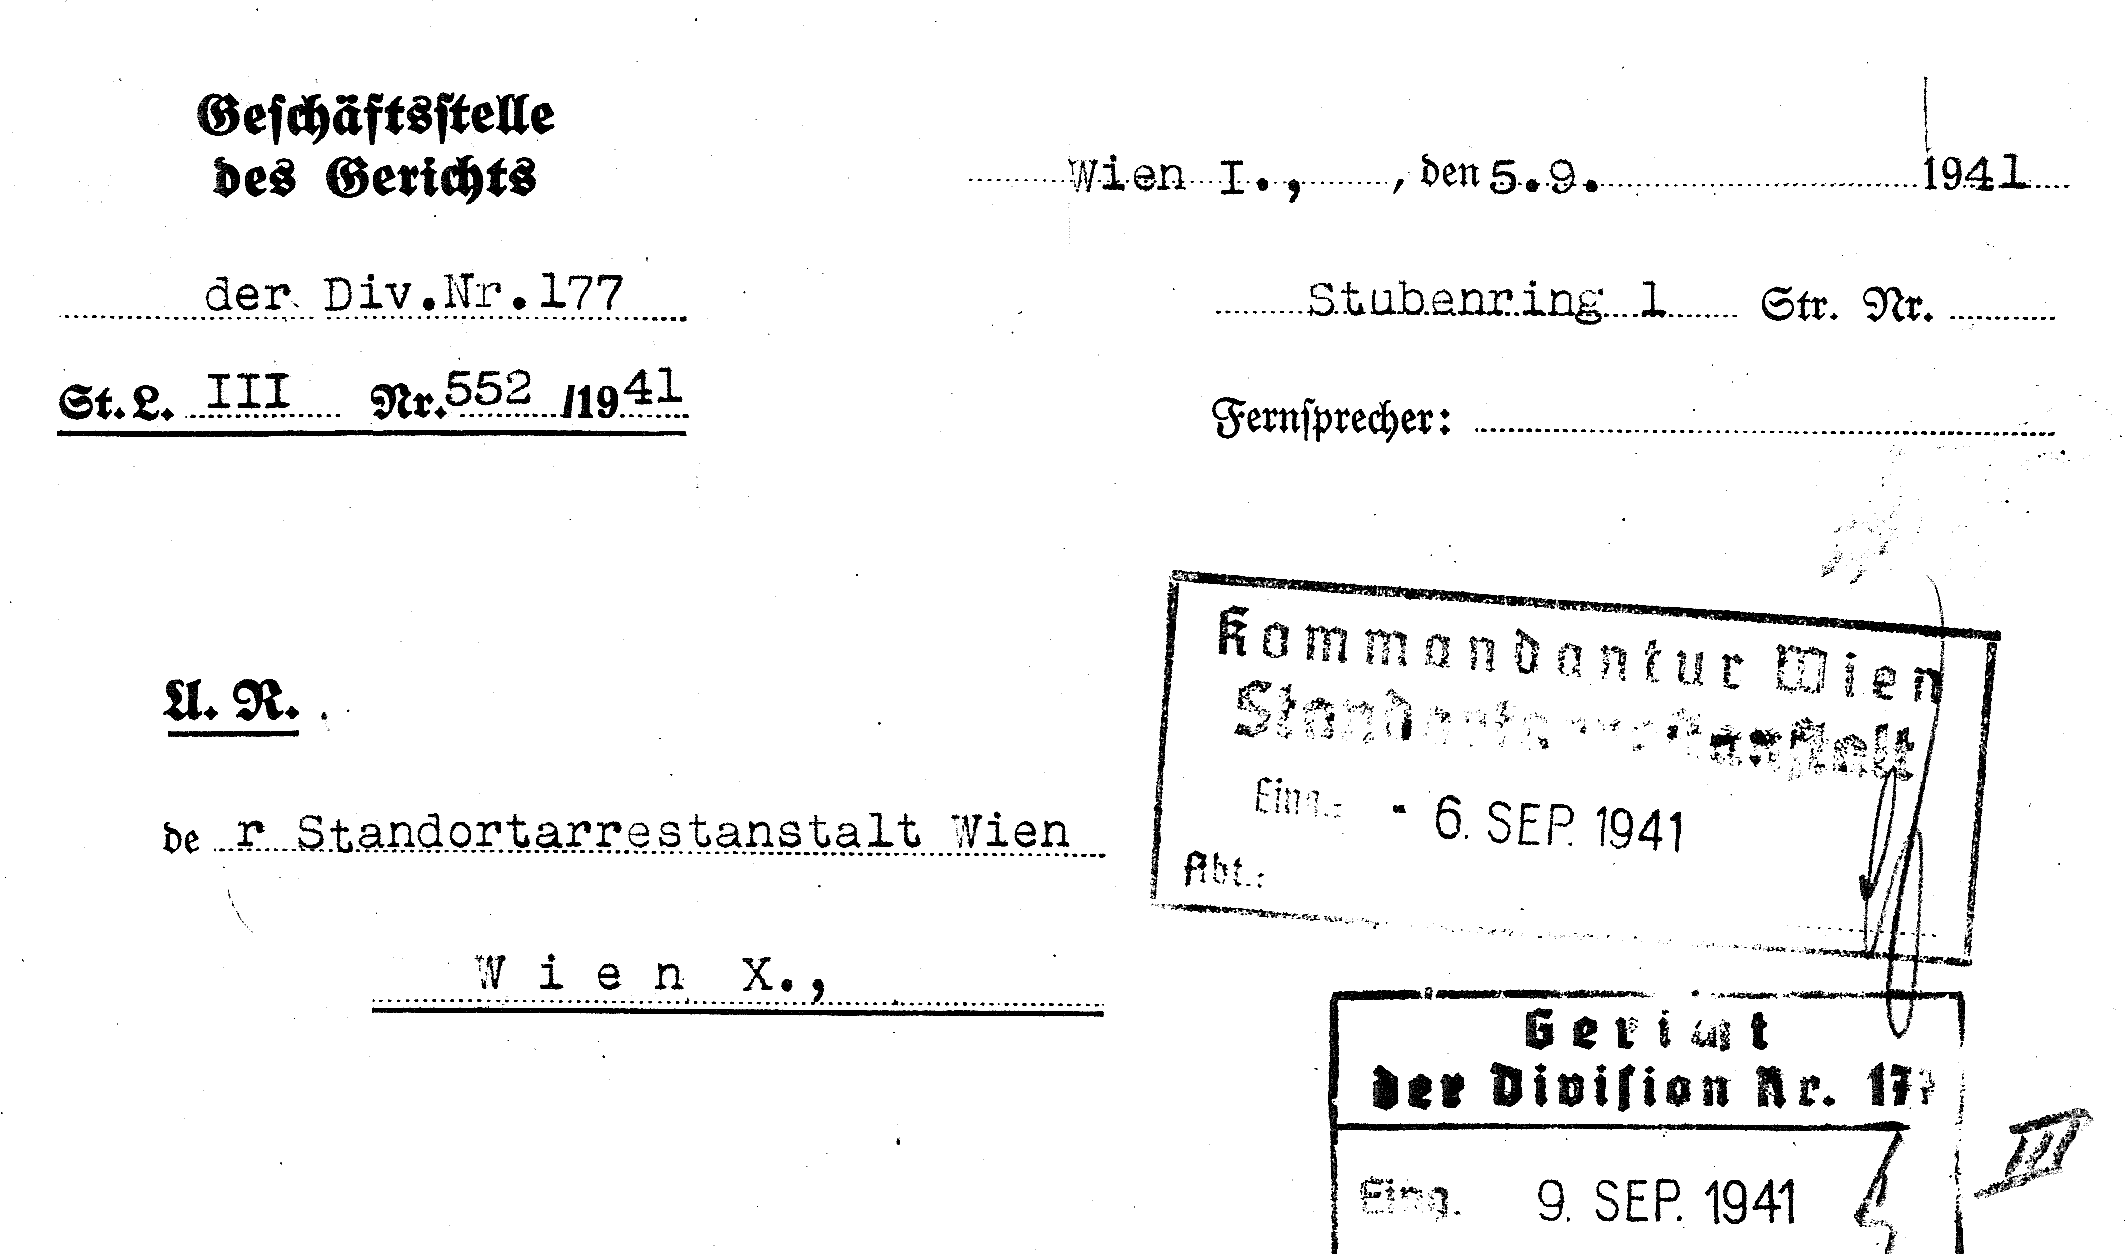 Briefkopf des Gerichts der Division 177, Standort Stubenring (Quelle: DÖW)